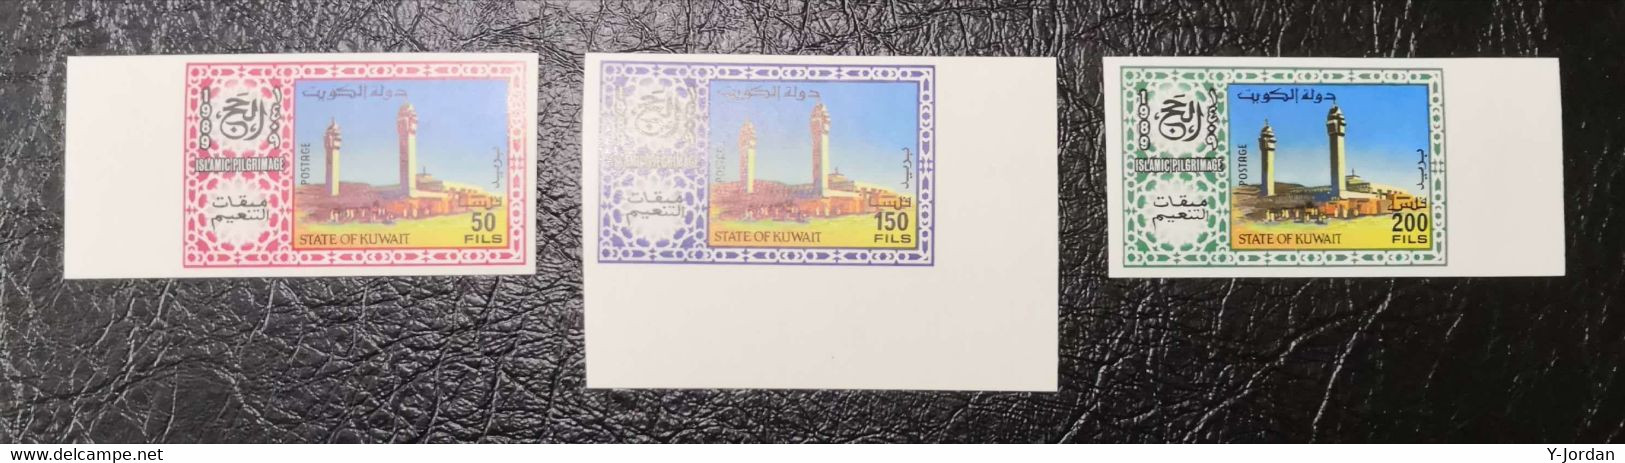 Kuwait - Islamic Pilgrimage 1989 Imperf (MNH) - Kuwait